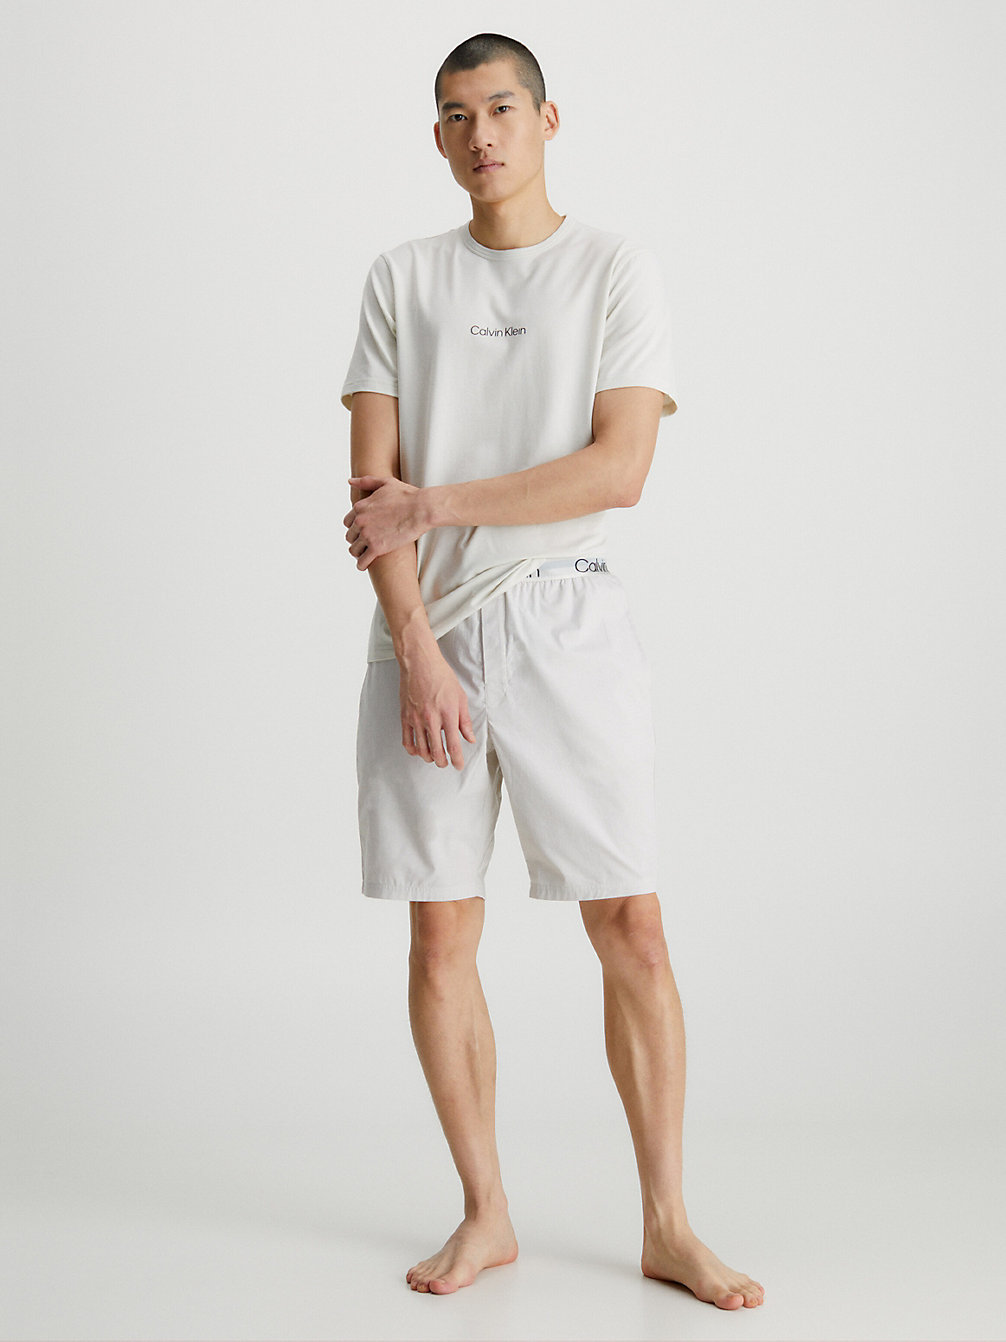 SVR BIRCH TOP, SVR BIRCH_CHMBRY BTM Shorts Pyjama Set - Modern Structure undefined men Calvin Klein